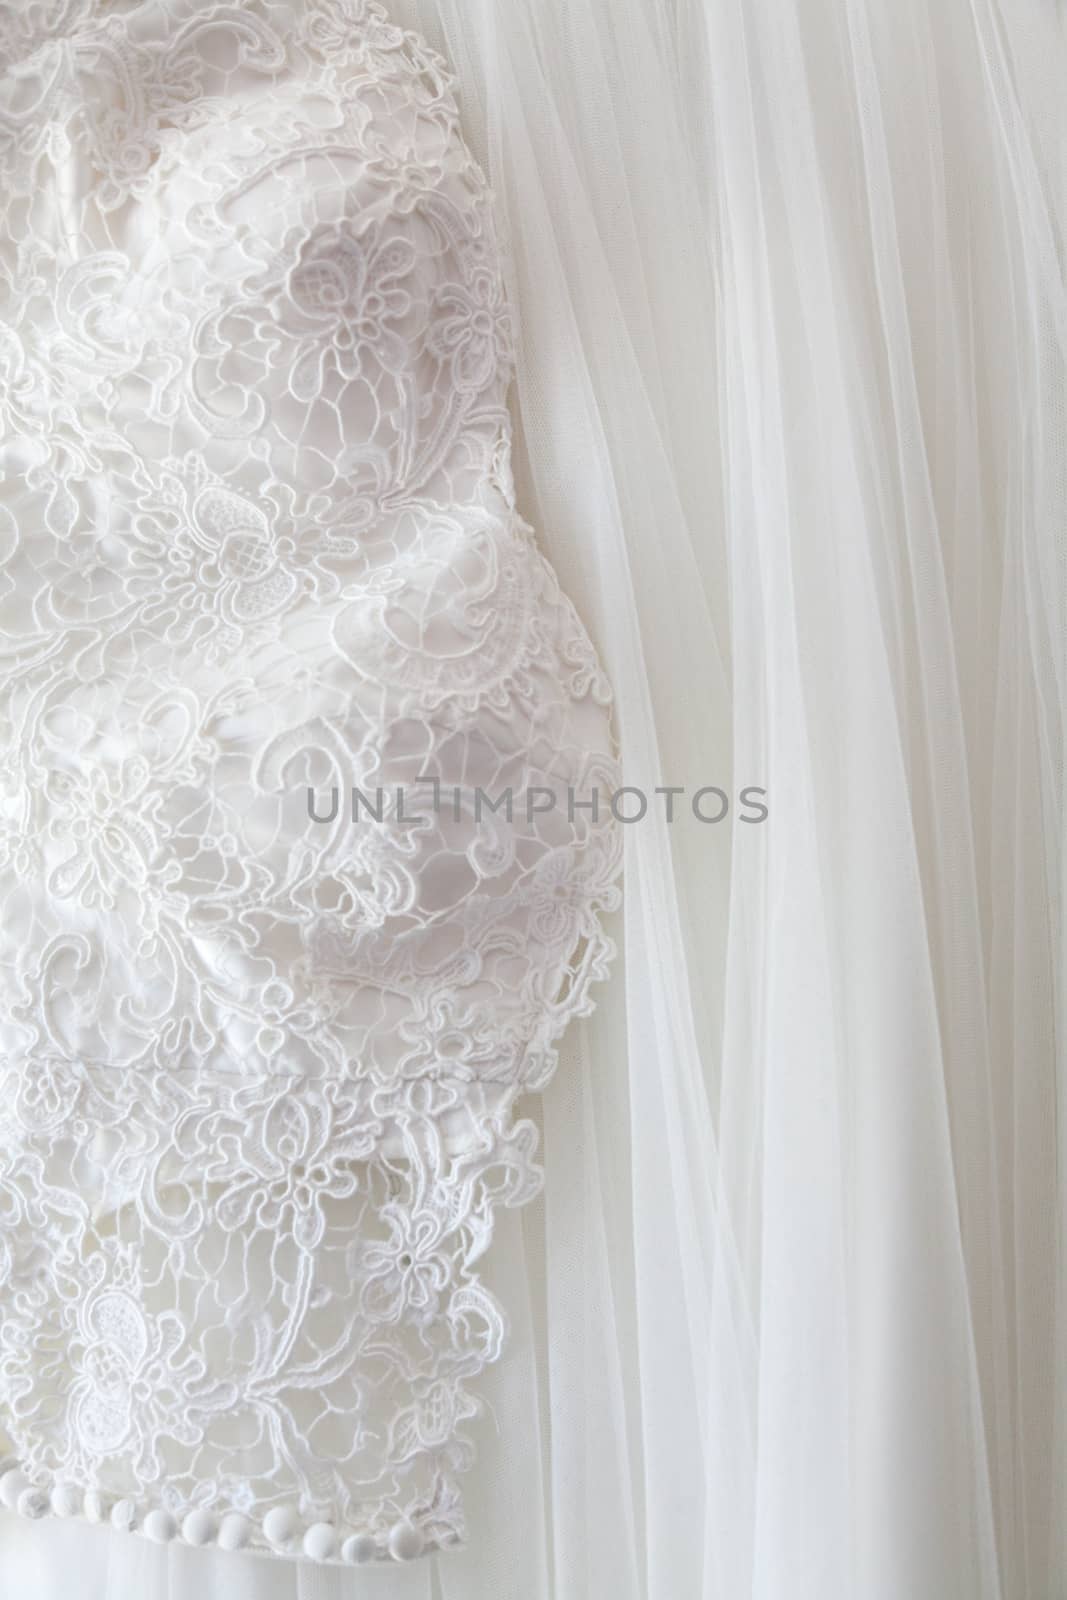 Wedding dress by Portokalis